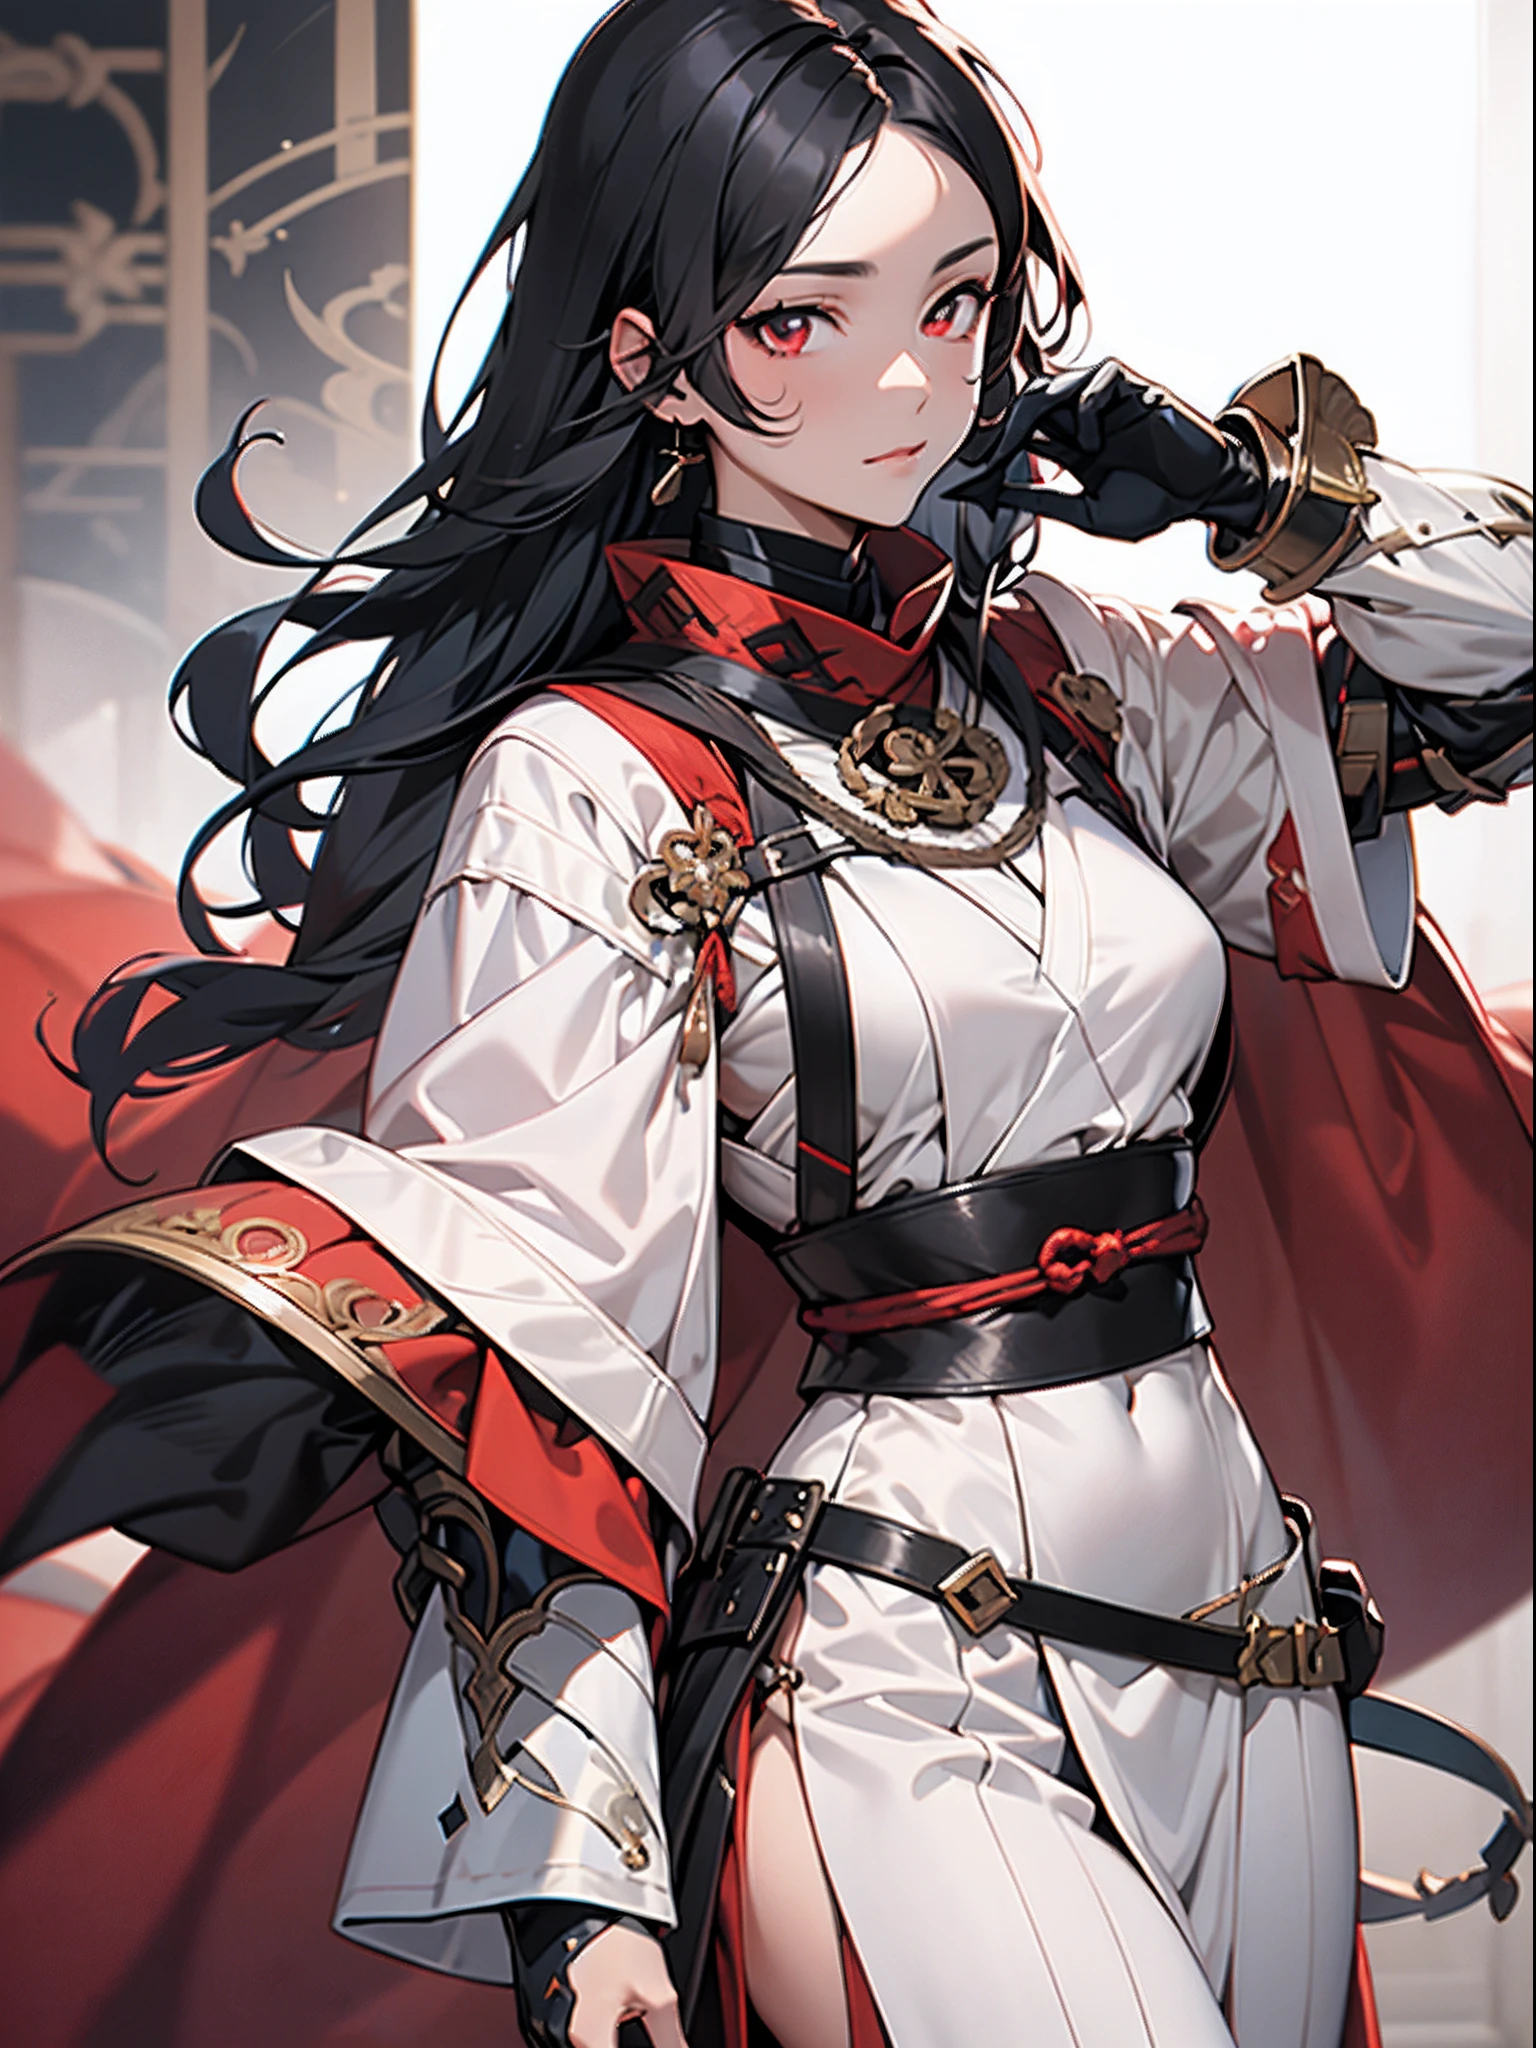 1 fille dans,onmyouji,suikan,armure,manteau rouge avec décoration blanche,cheveux longs noirs,les yeux rouges,Gant et gants noirs,belle main, des mains parfaites